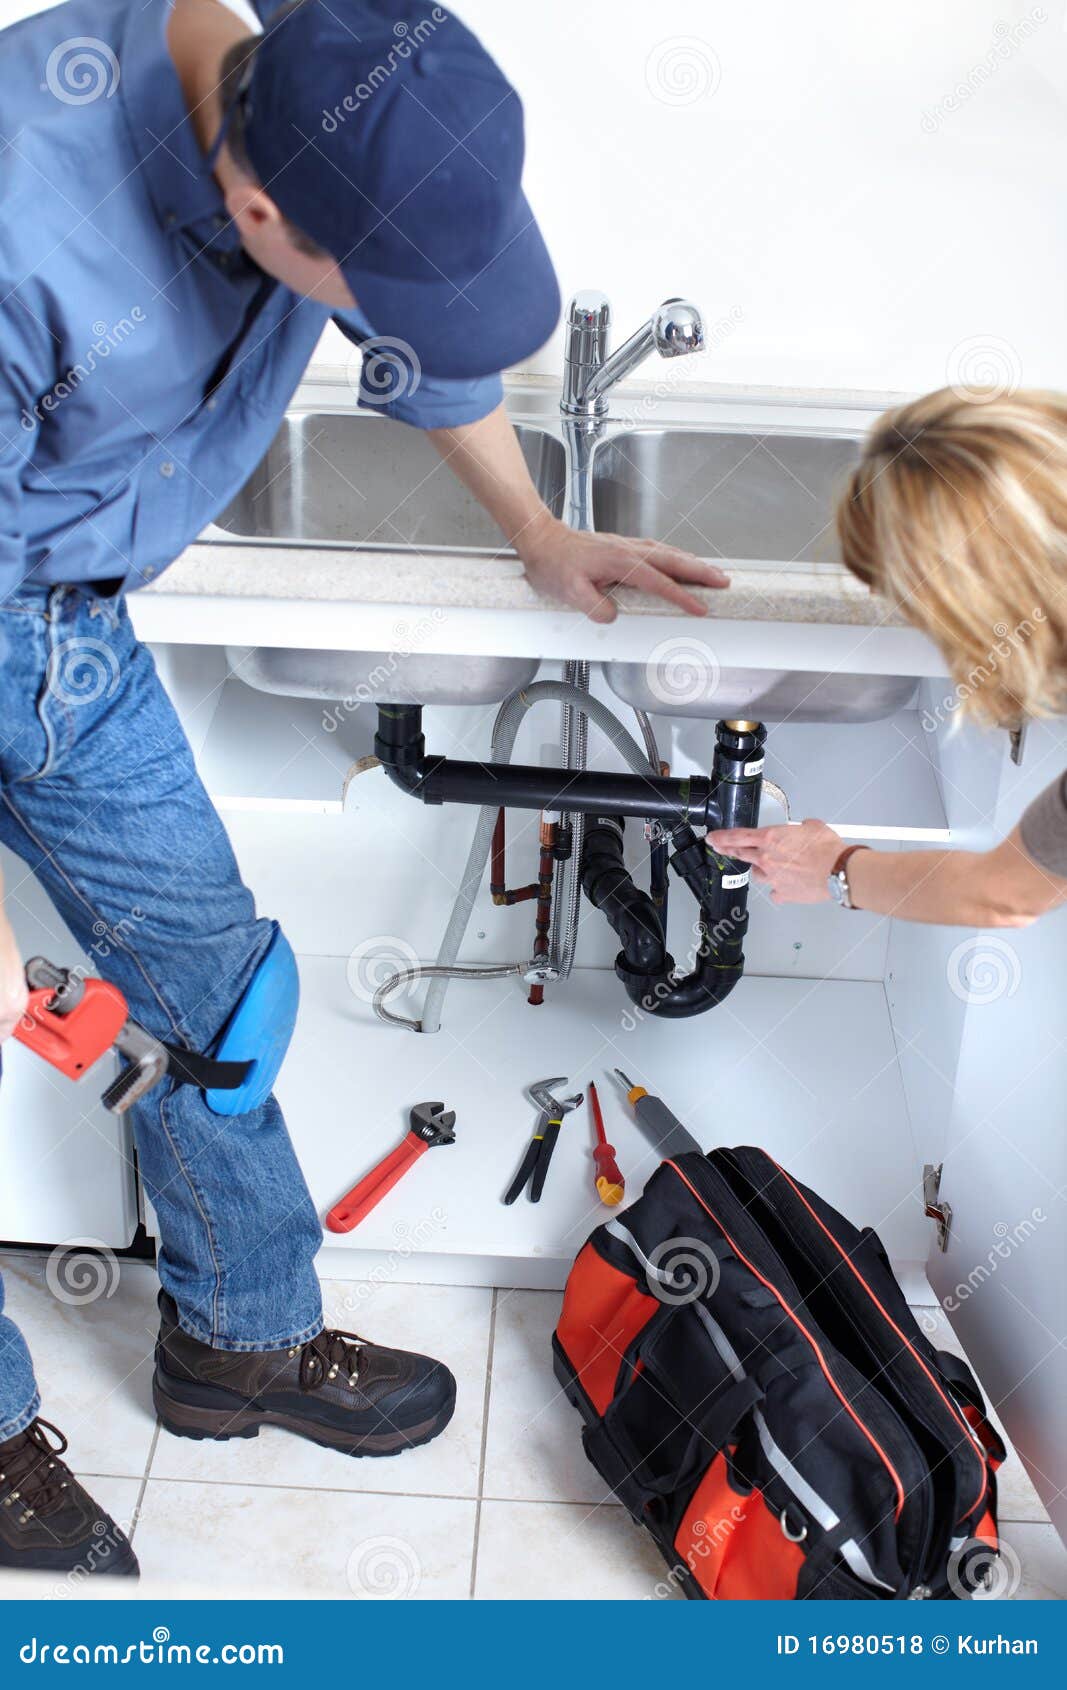 plumber-16980518.jpg